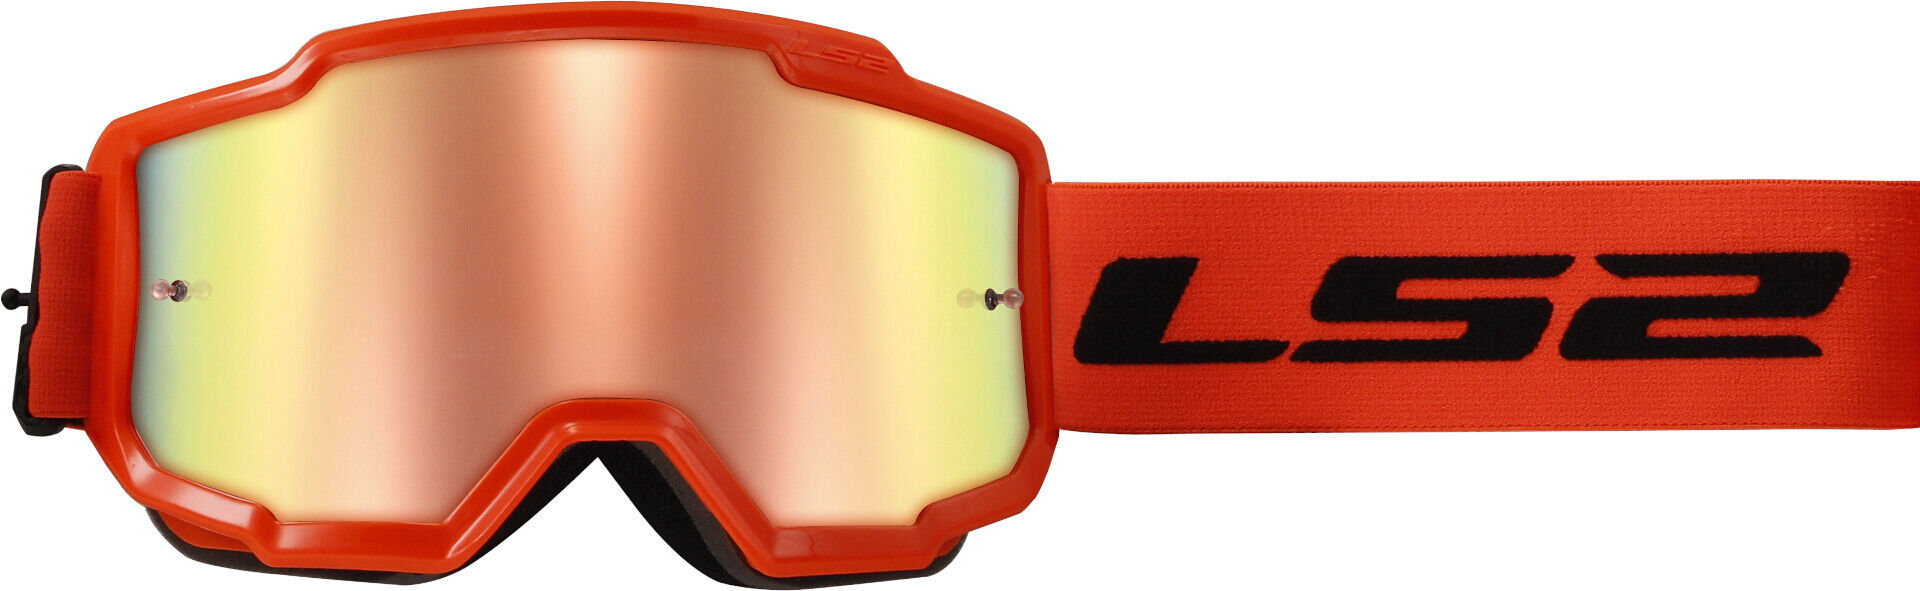 LS2 Charger Gafas de motocross - Naranja